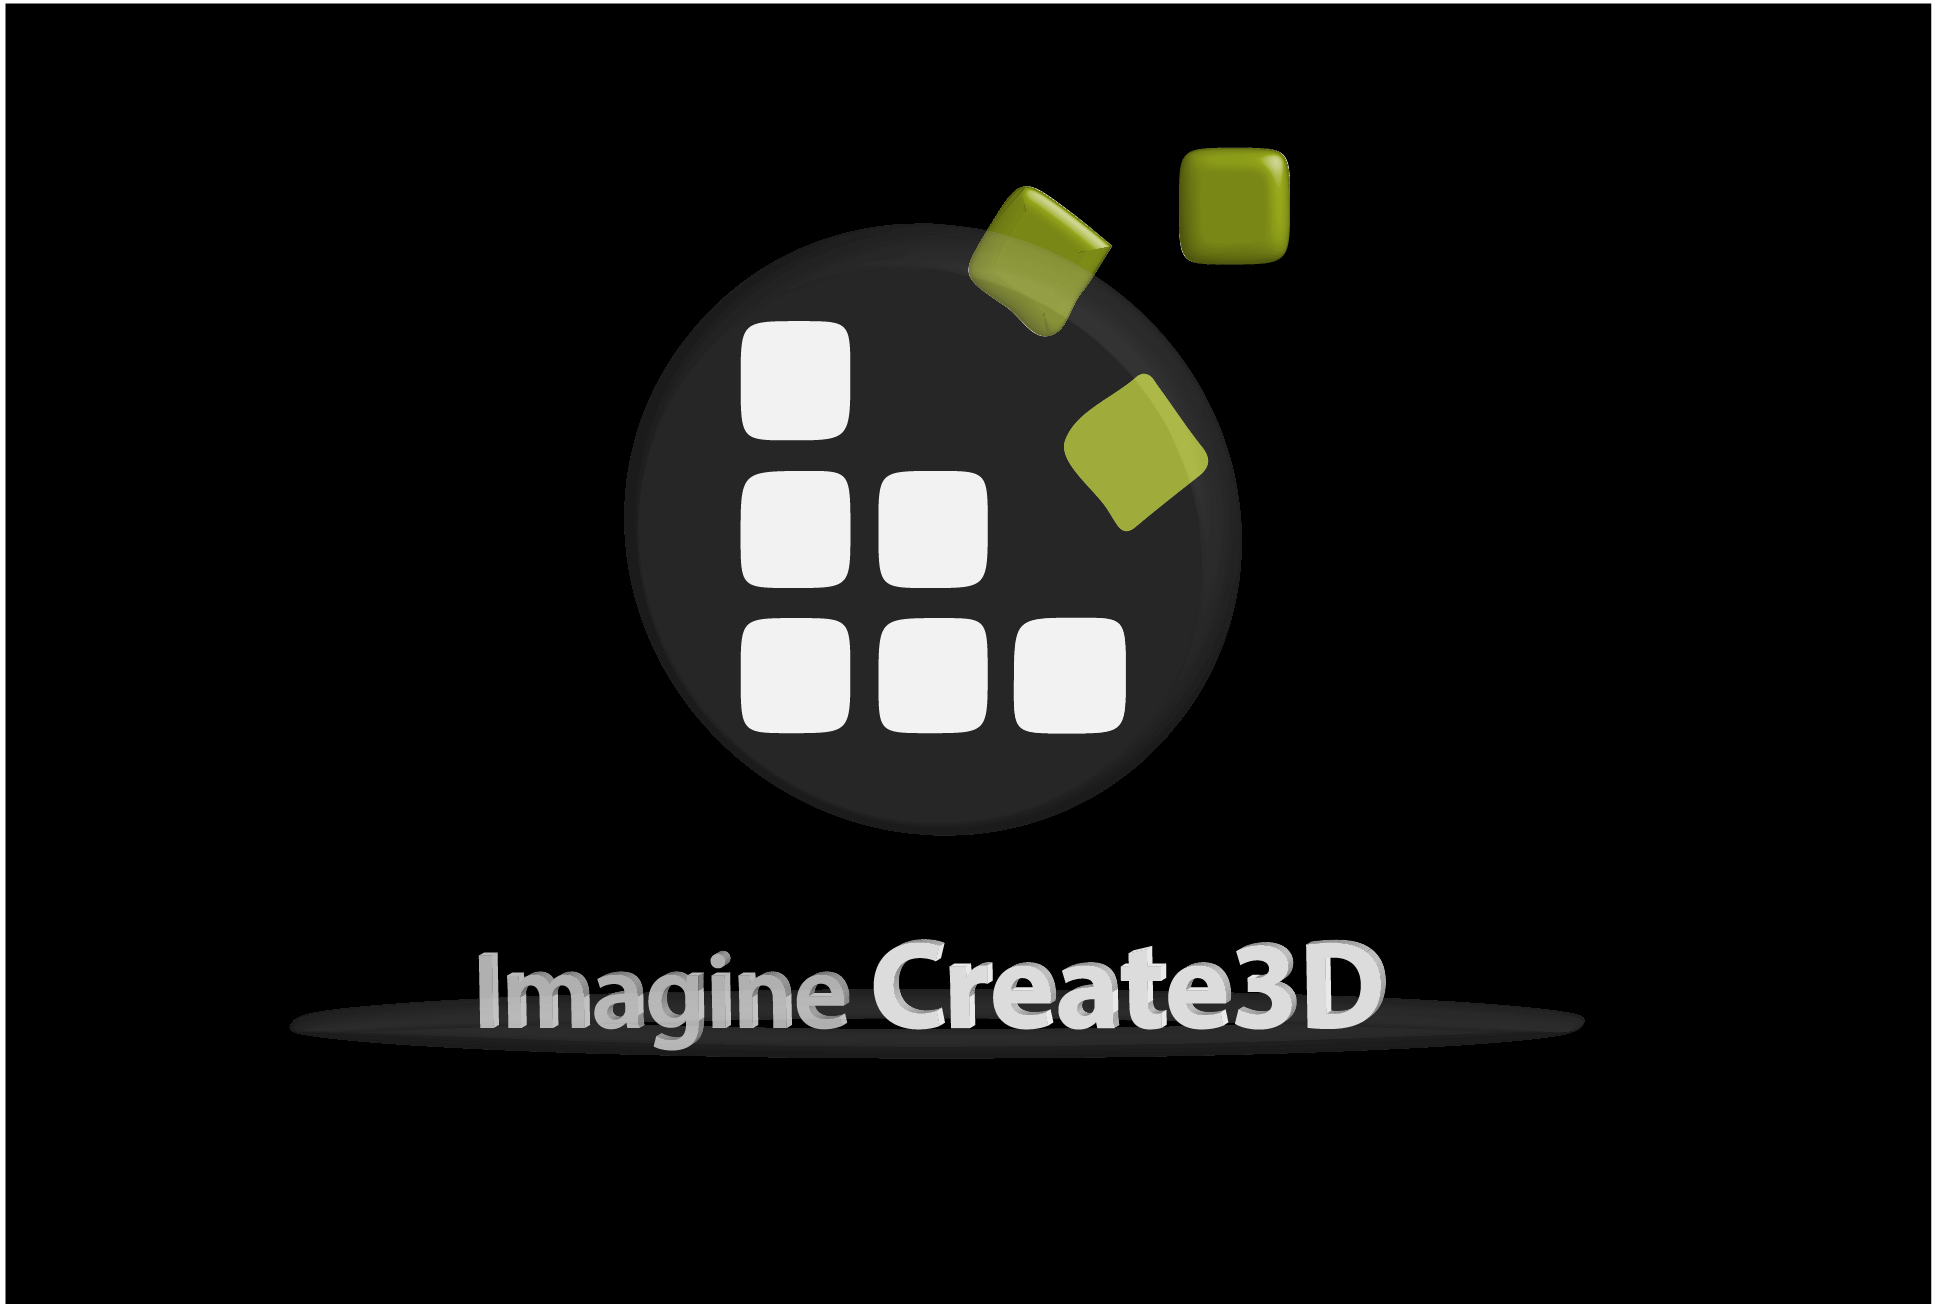 ImagineCreate3D